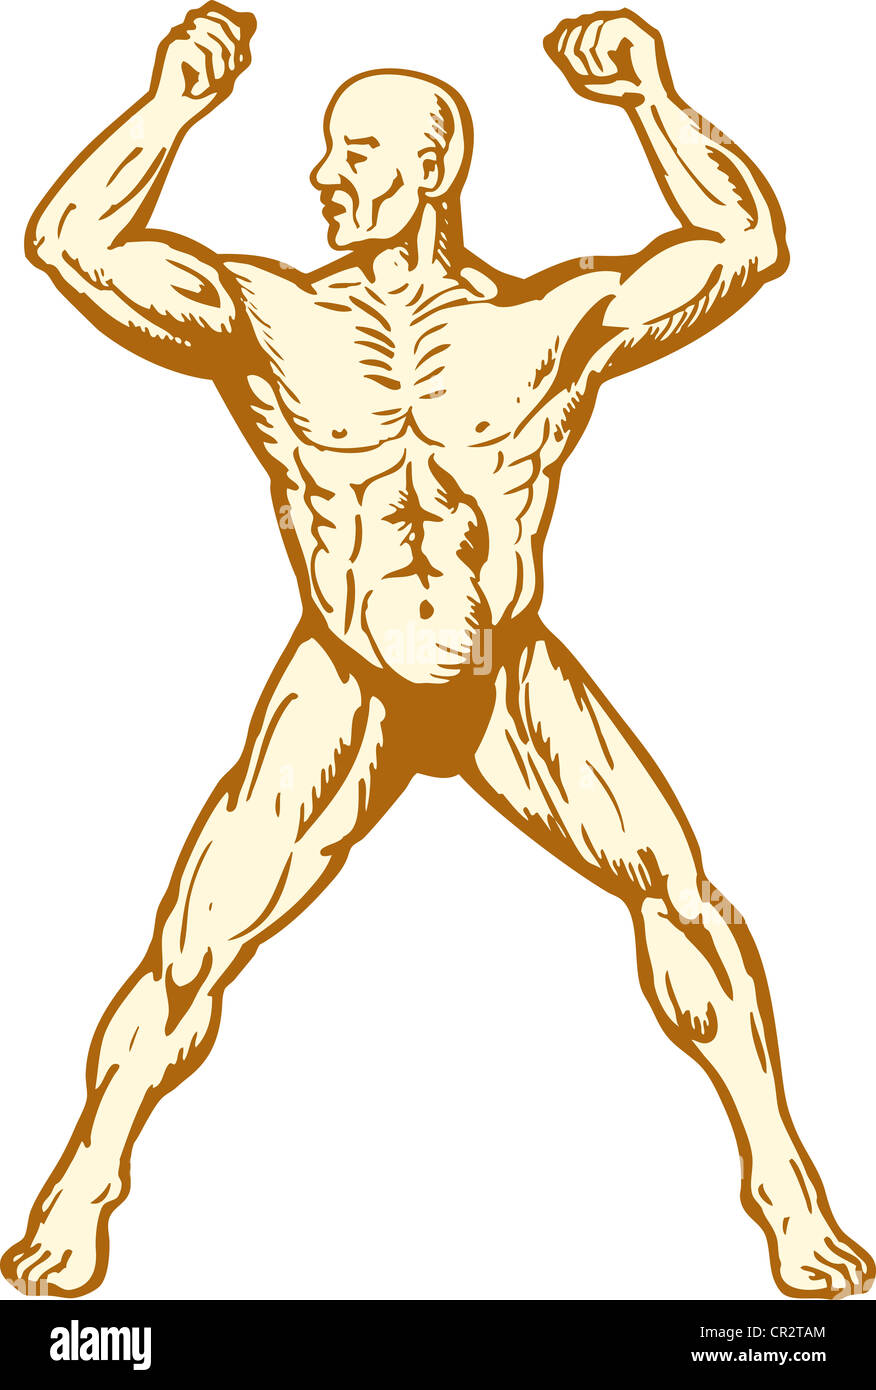 Illustration de l'homme anatomie humaine Body builder flexing muscles sur fond isolé woodcut style. Banque D'Images